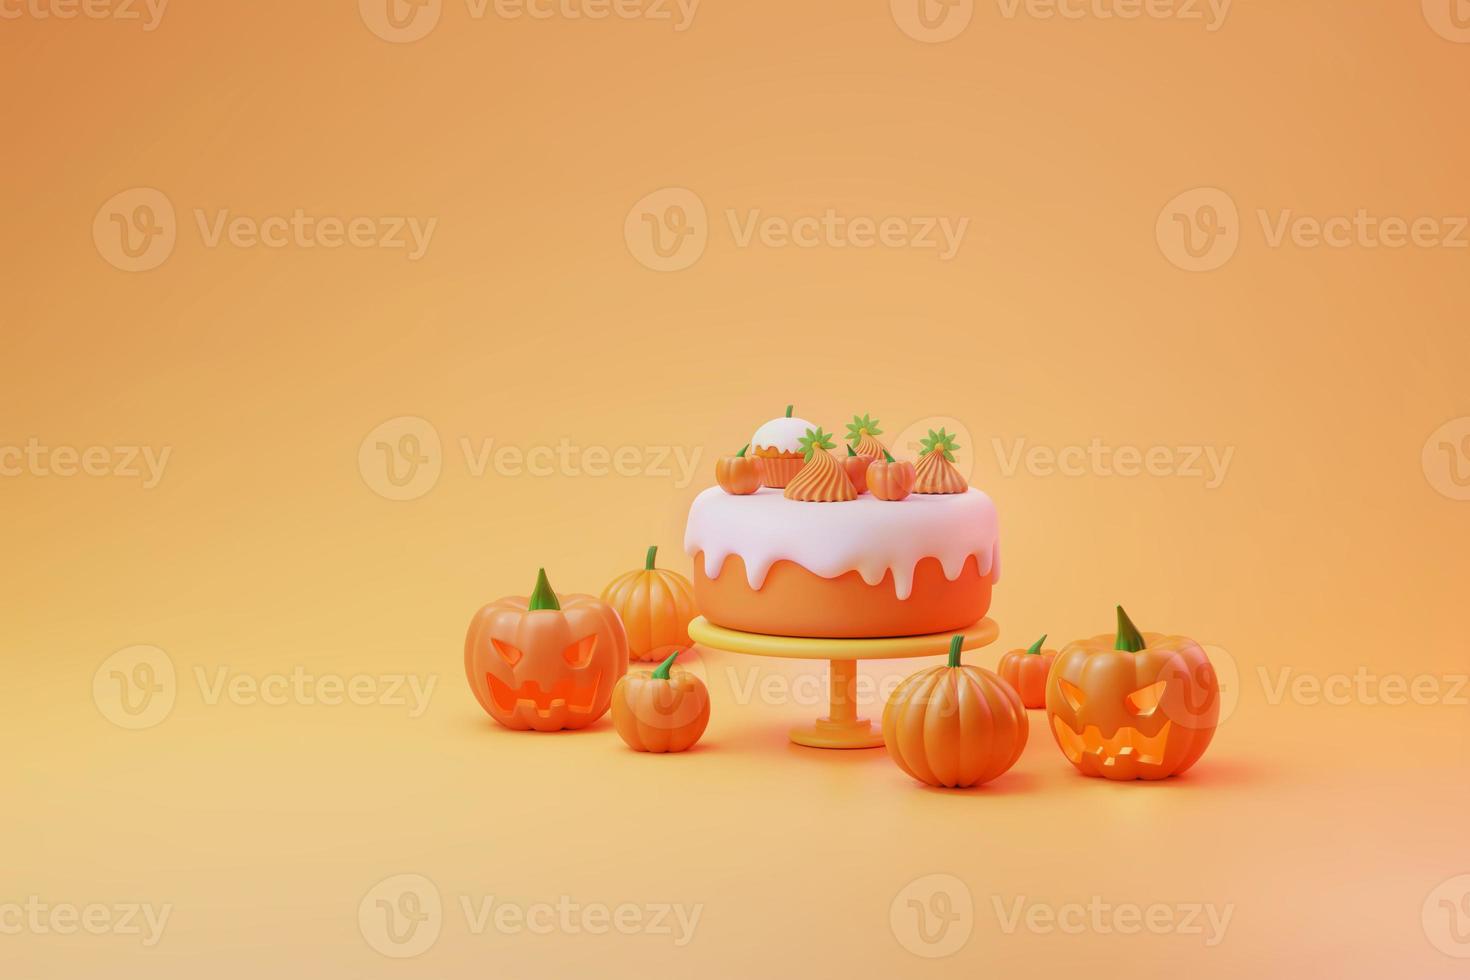 gâteau d'halloween et glaçage blanc avec une jolie citrouille et une décoration d'élément de cupcake illustration 3d photo